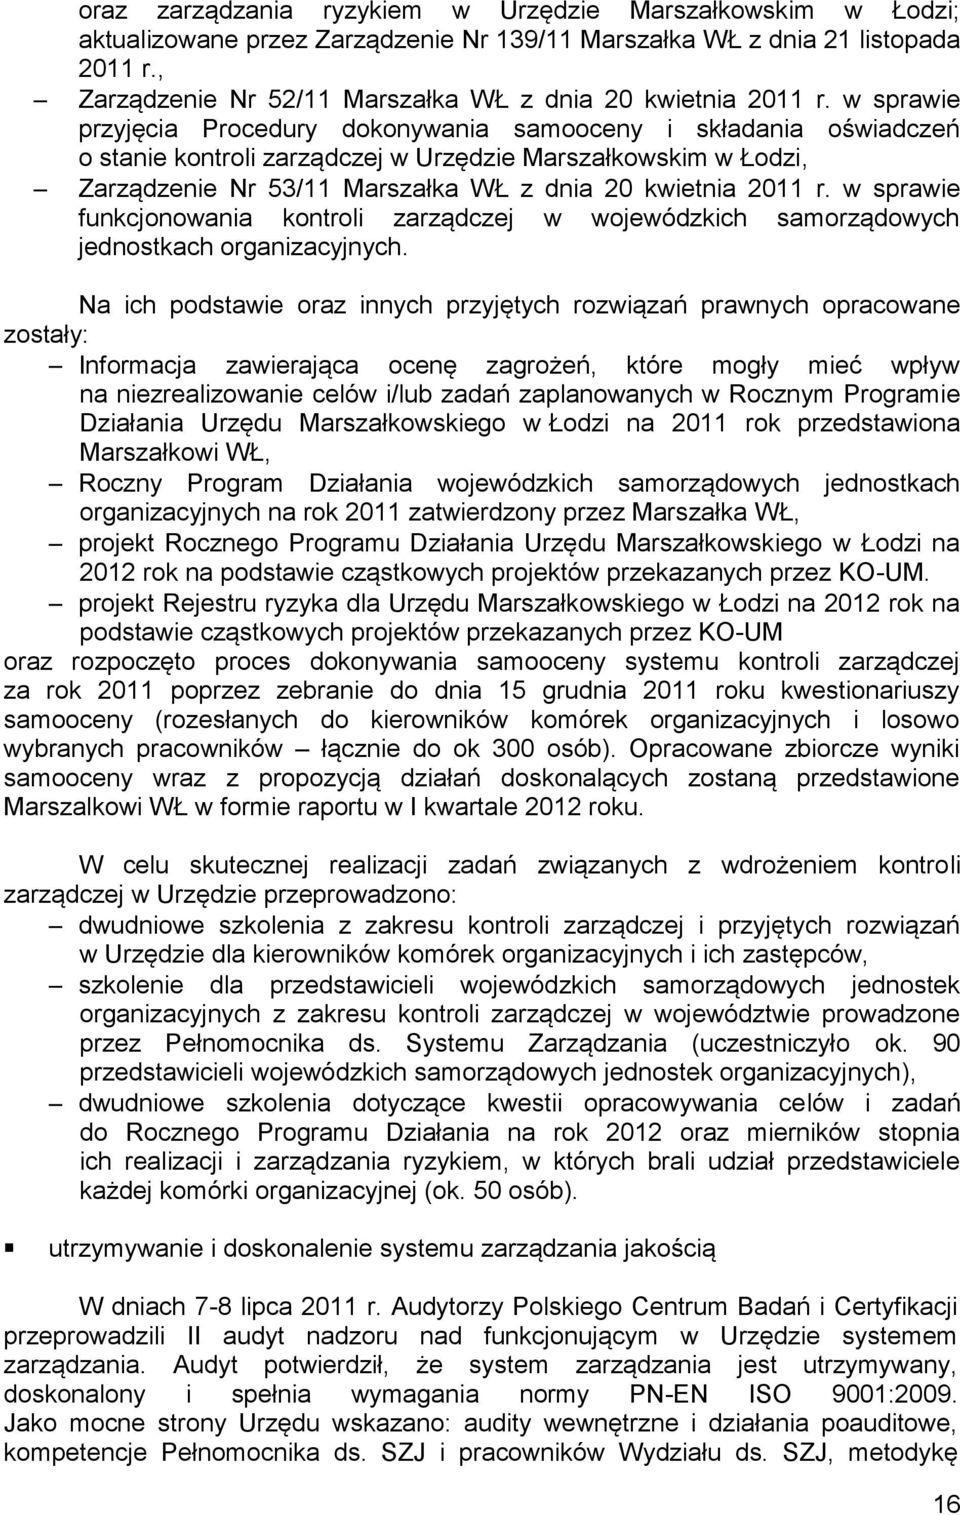 w sprawie przyjęcia Procedury dokonywania samooceny i składania oświadczeń o stanie kontroli zarządczej w Urzędzie Marszałkowskim w Łodzi, Zarządzenie Nr 53/11 Marszałka WŁ z dnia 20 kwietnia 2011 r.